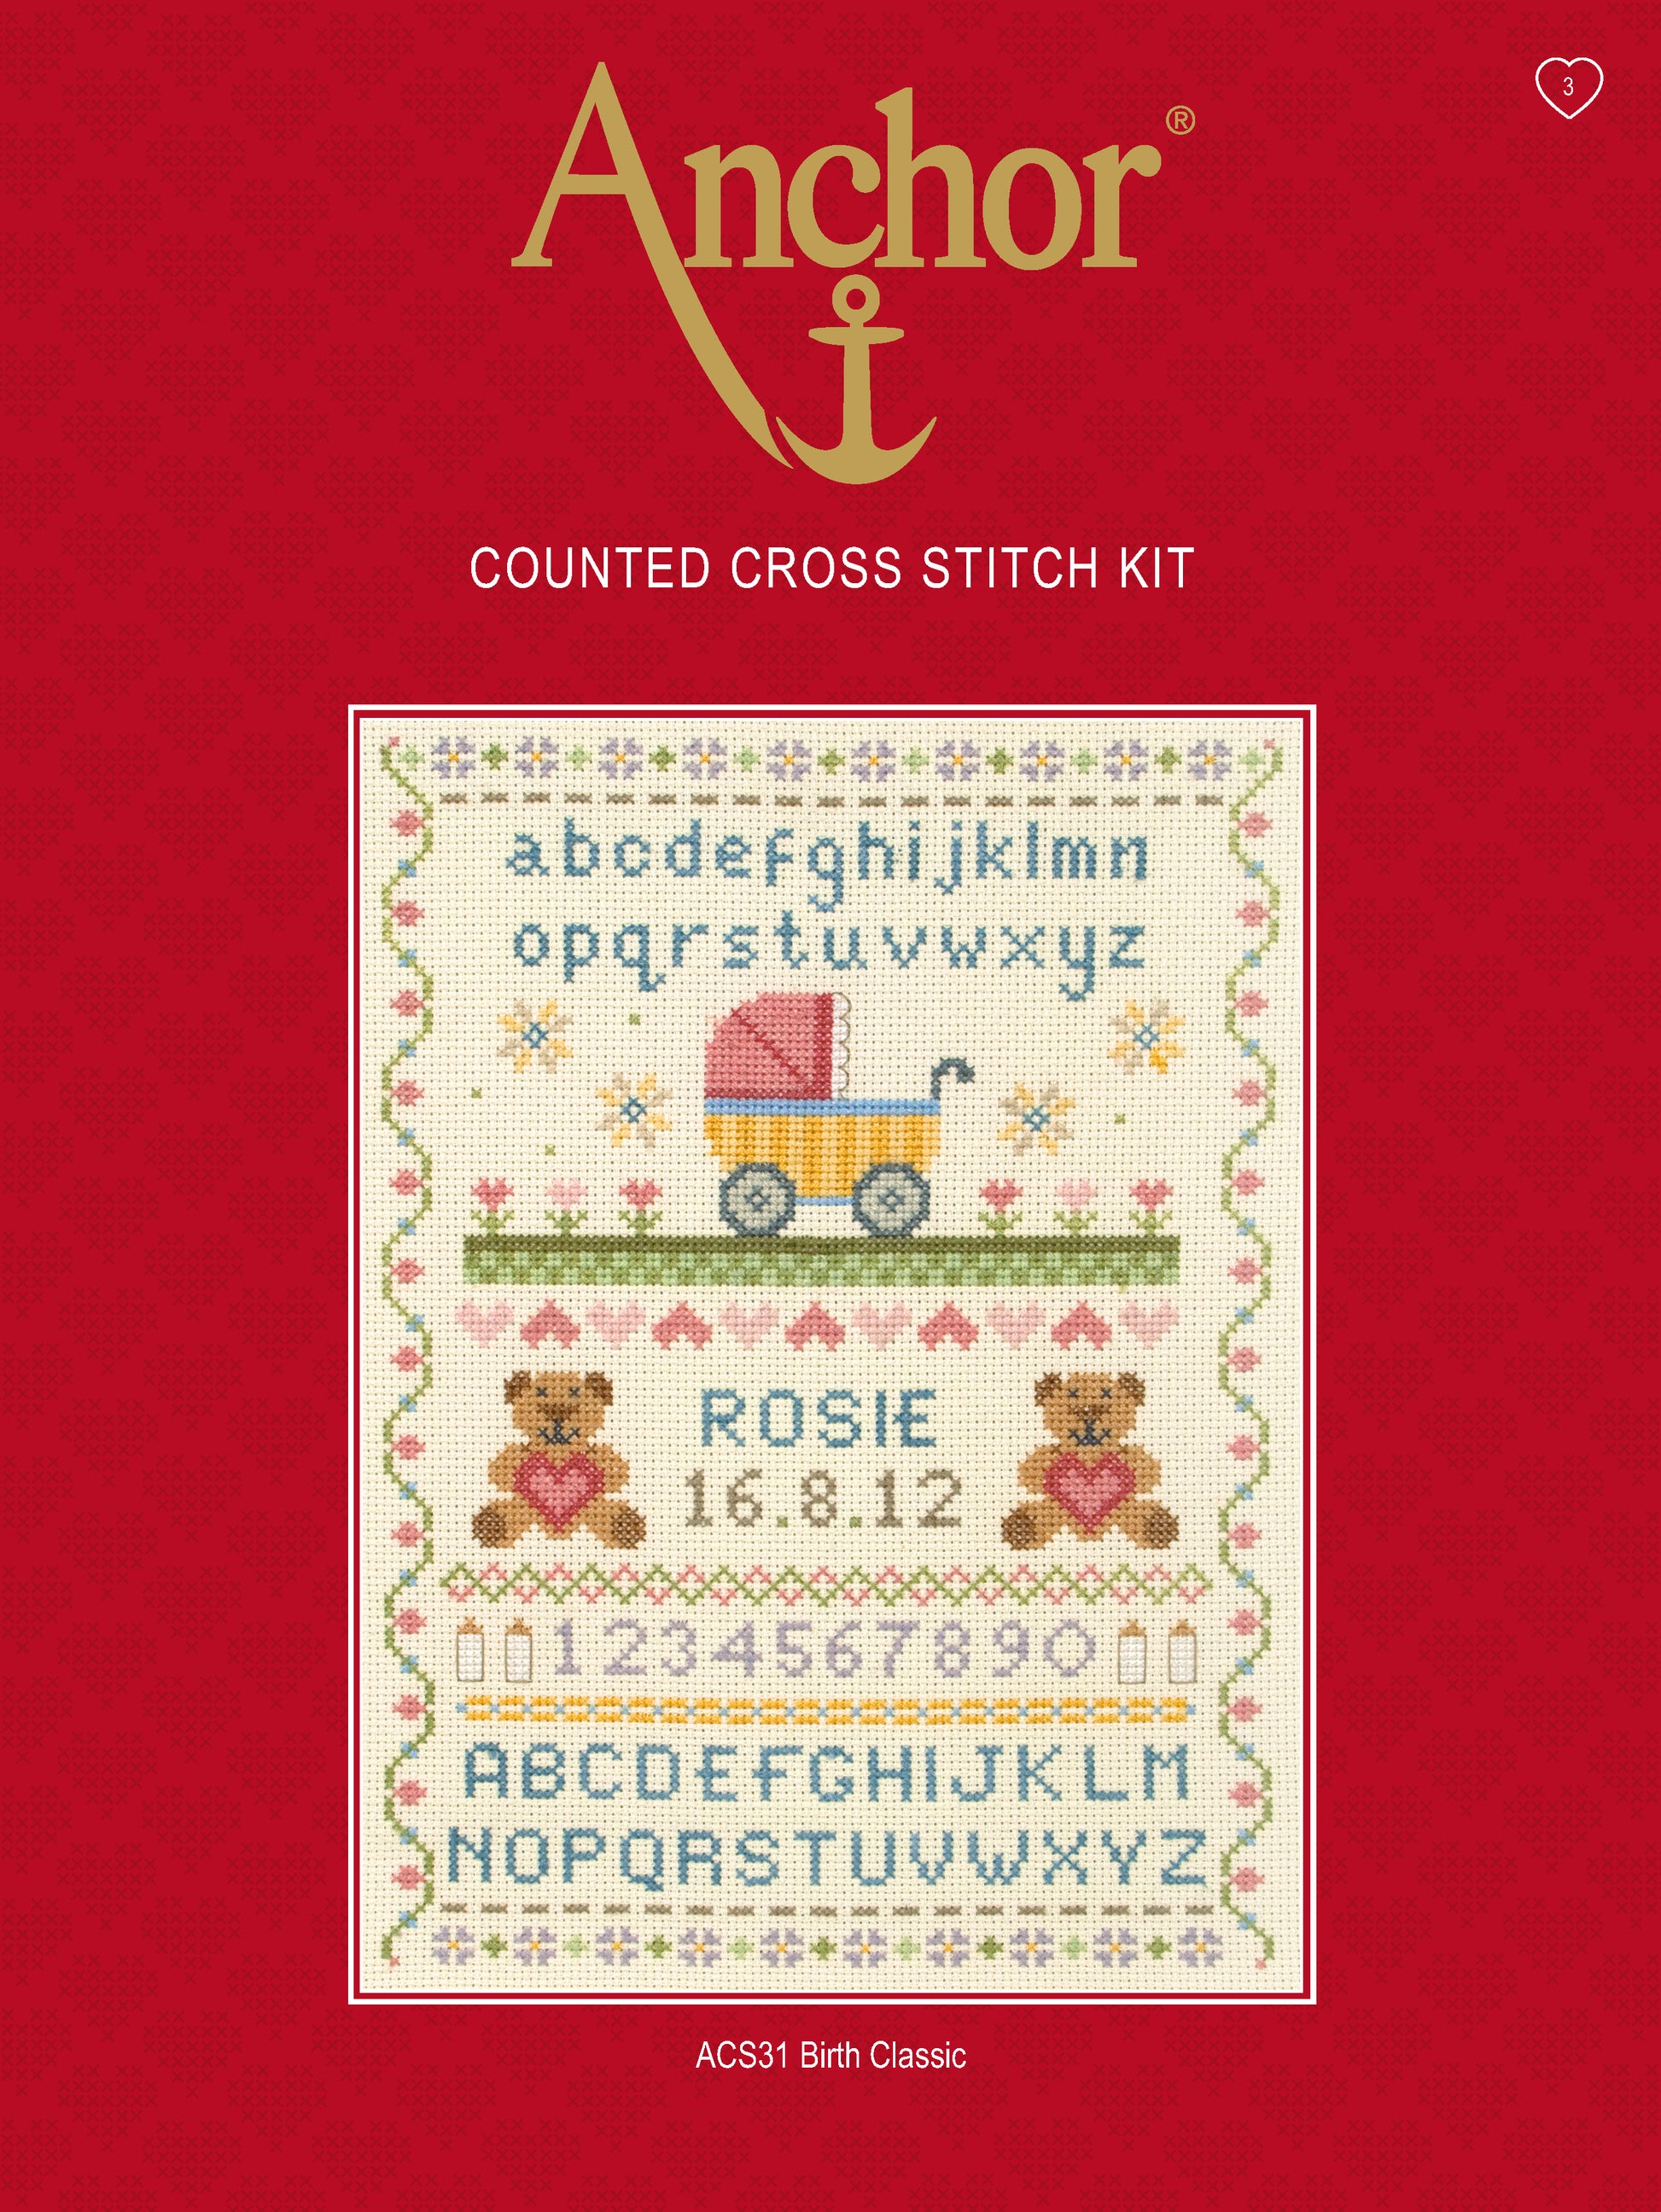 Información Kit de punto de cruz abecedario infantil para decorar habitación bebé o niño pequeño de Anchor